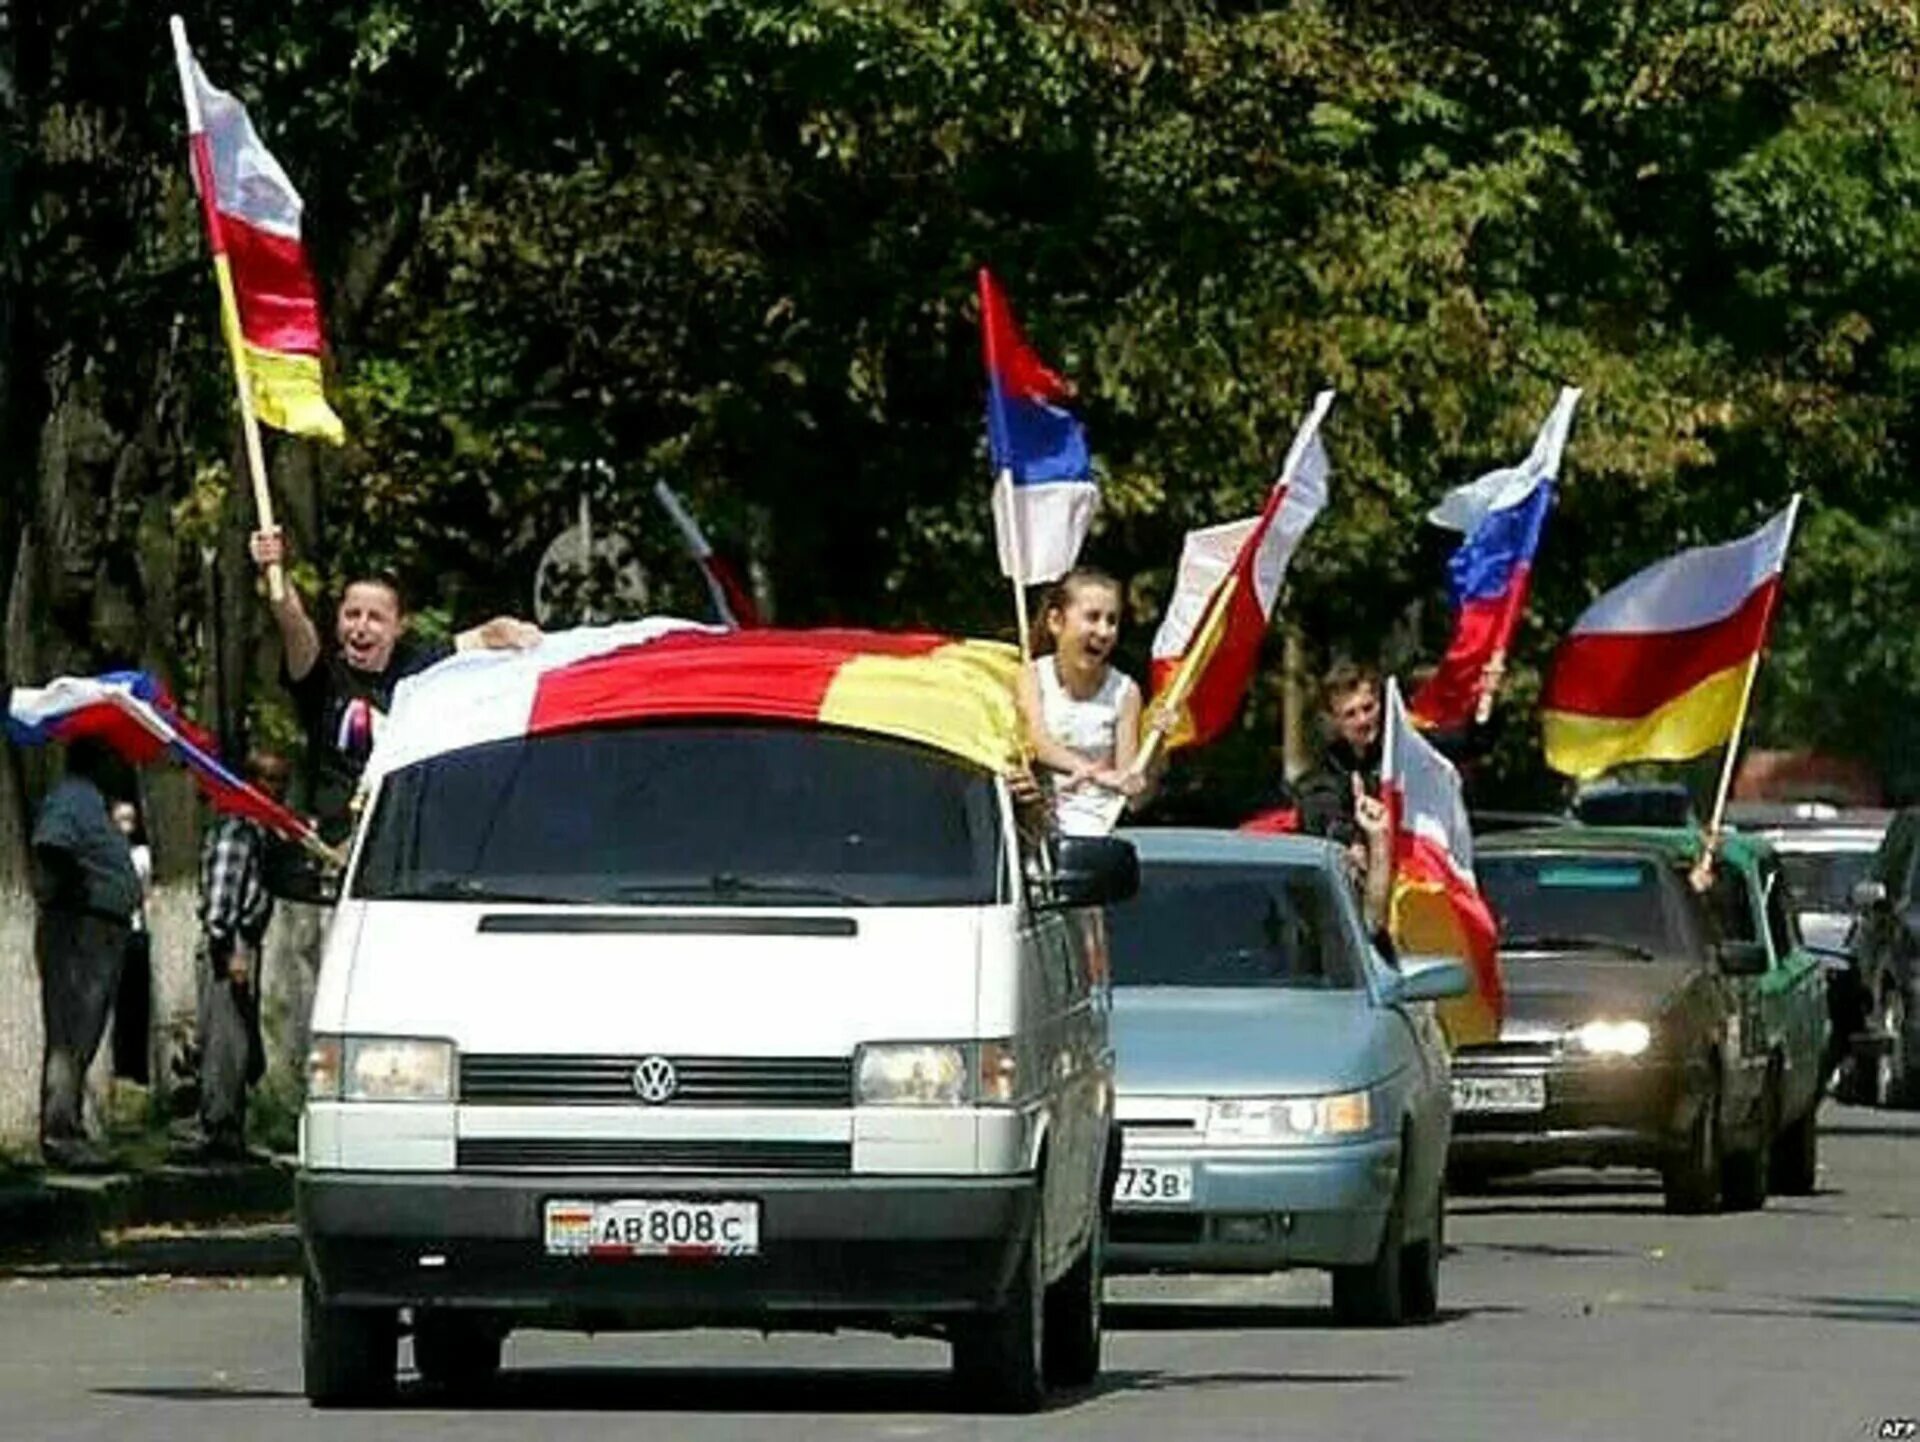 Южная осетия год независимости. 26 Августа 2008 Южная Осетия. 26 Августа 2008 независимость Южной Осетии. 17 Июля референдум в Южной Осетии. Признание Россией независимости Абхазии и Южной Осетии.